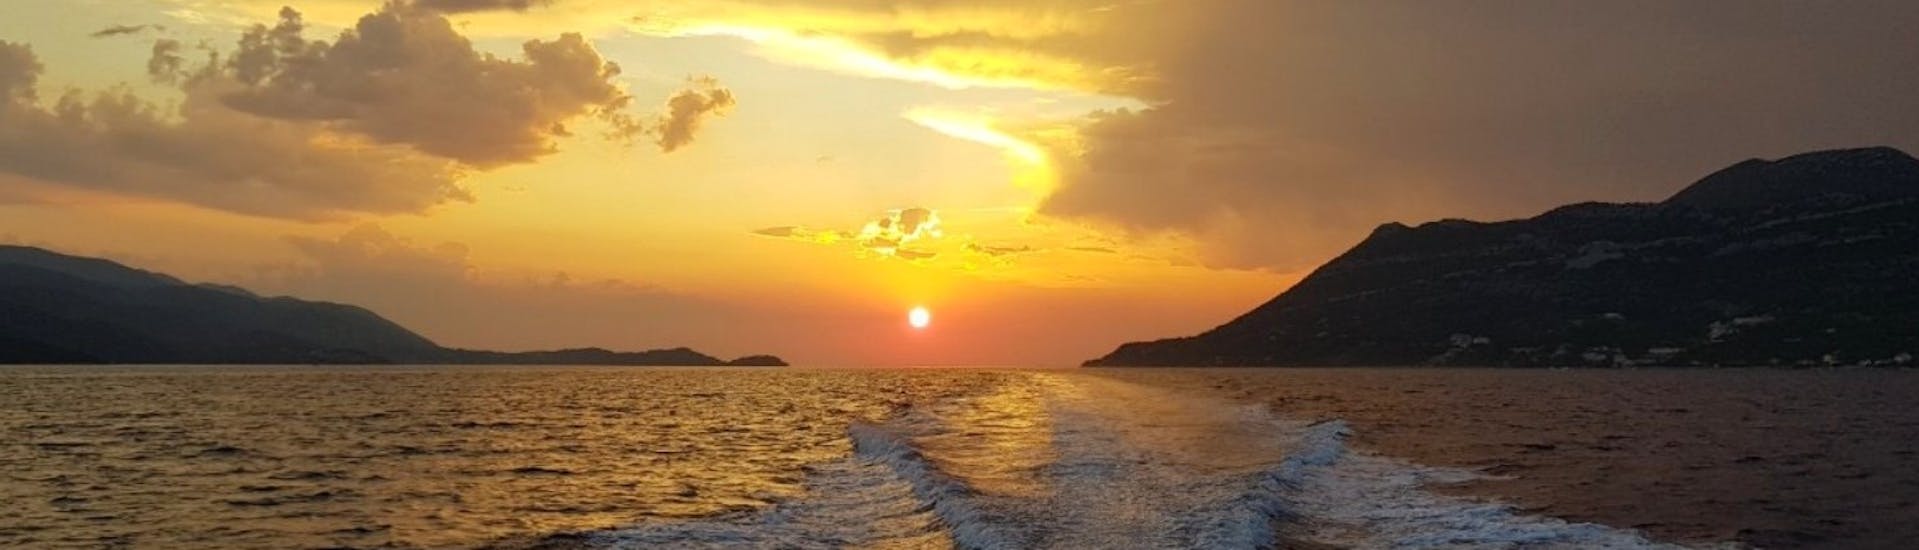 Il calar del sole durante la crociera privata al tramonto da Dubrovnik all'isola di Daska organizzata da Snooky Tours Dubrovnik.